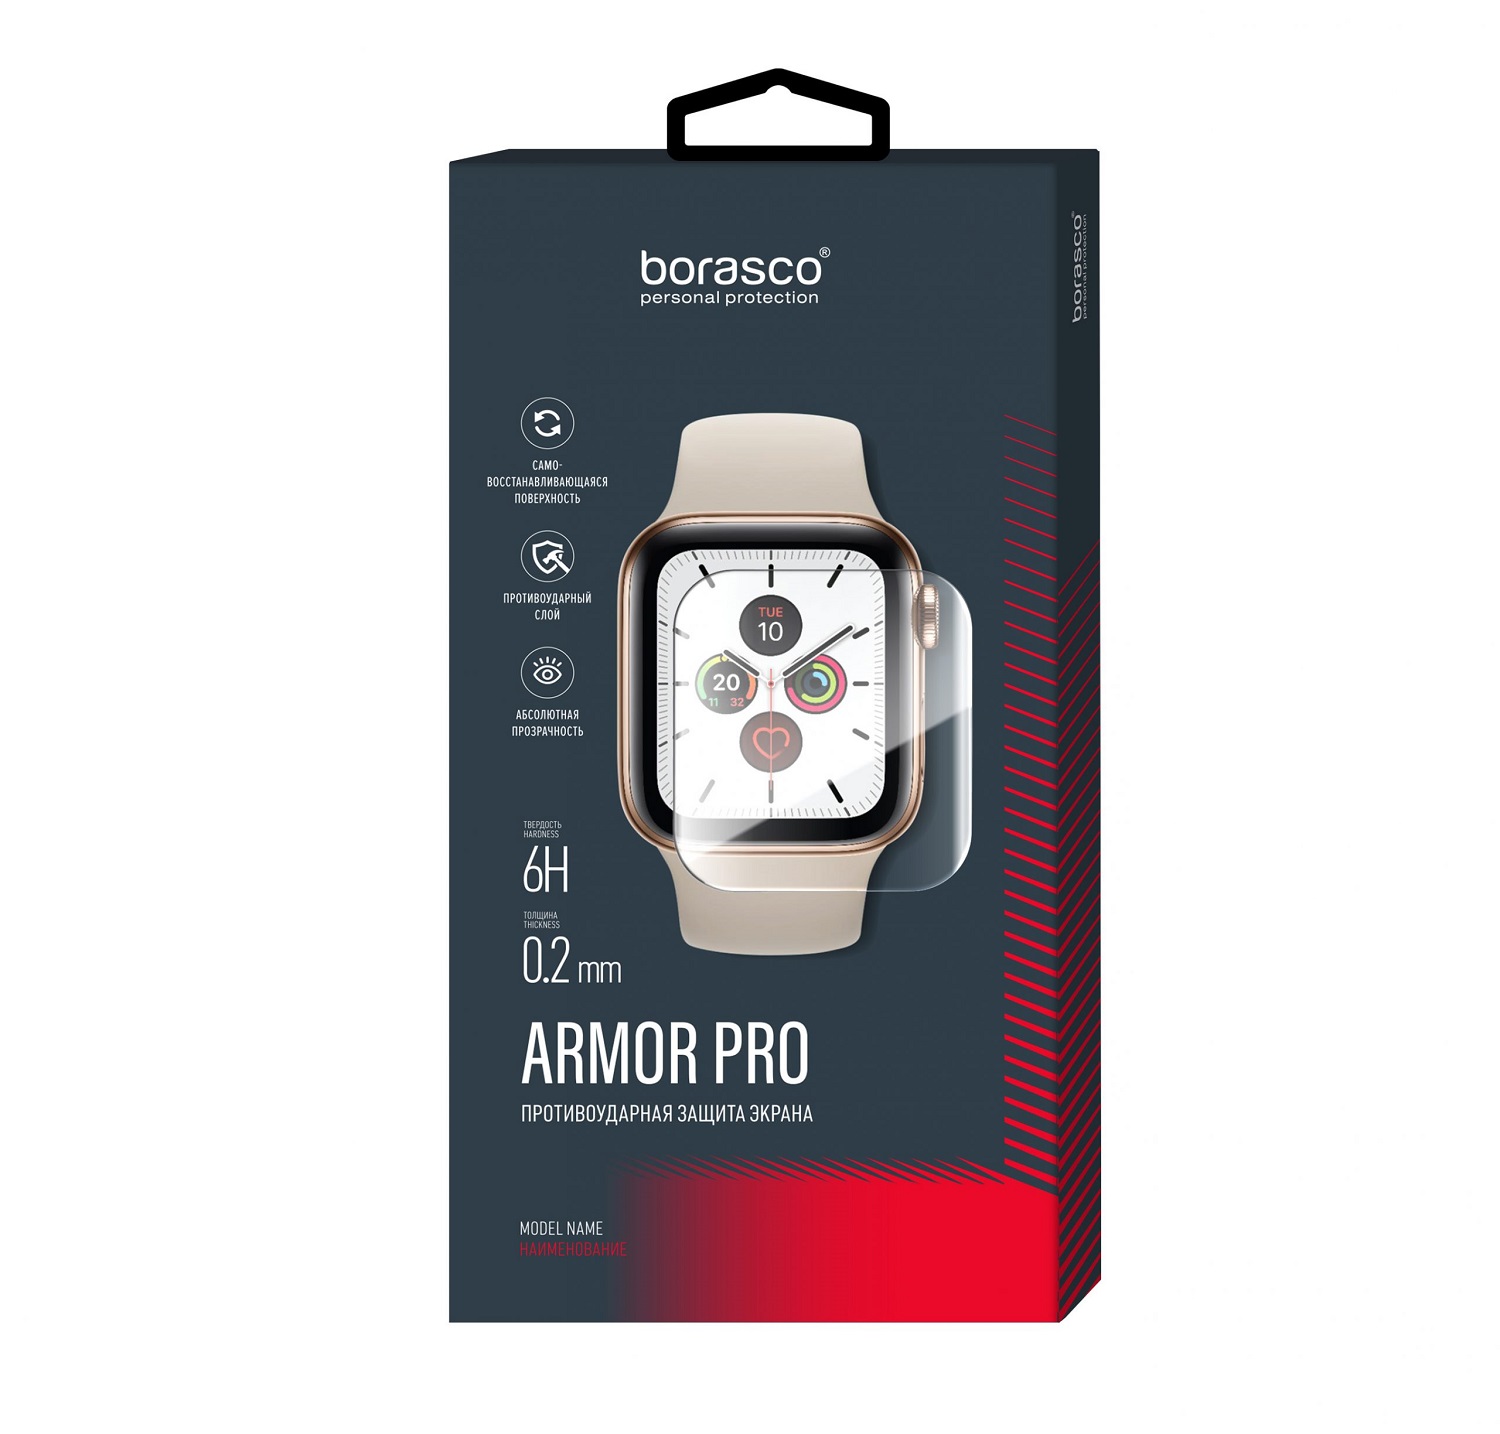 Защита экрана BoraSCO Armor Pro для Huawei Watch fit защита экрана borasco armor pro для huawei watch fit